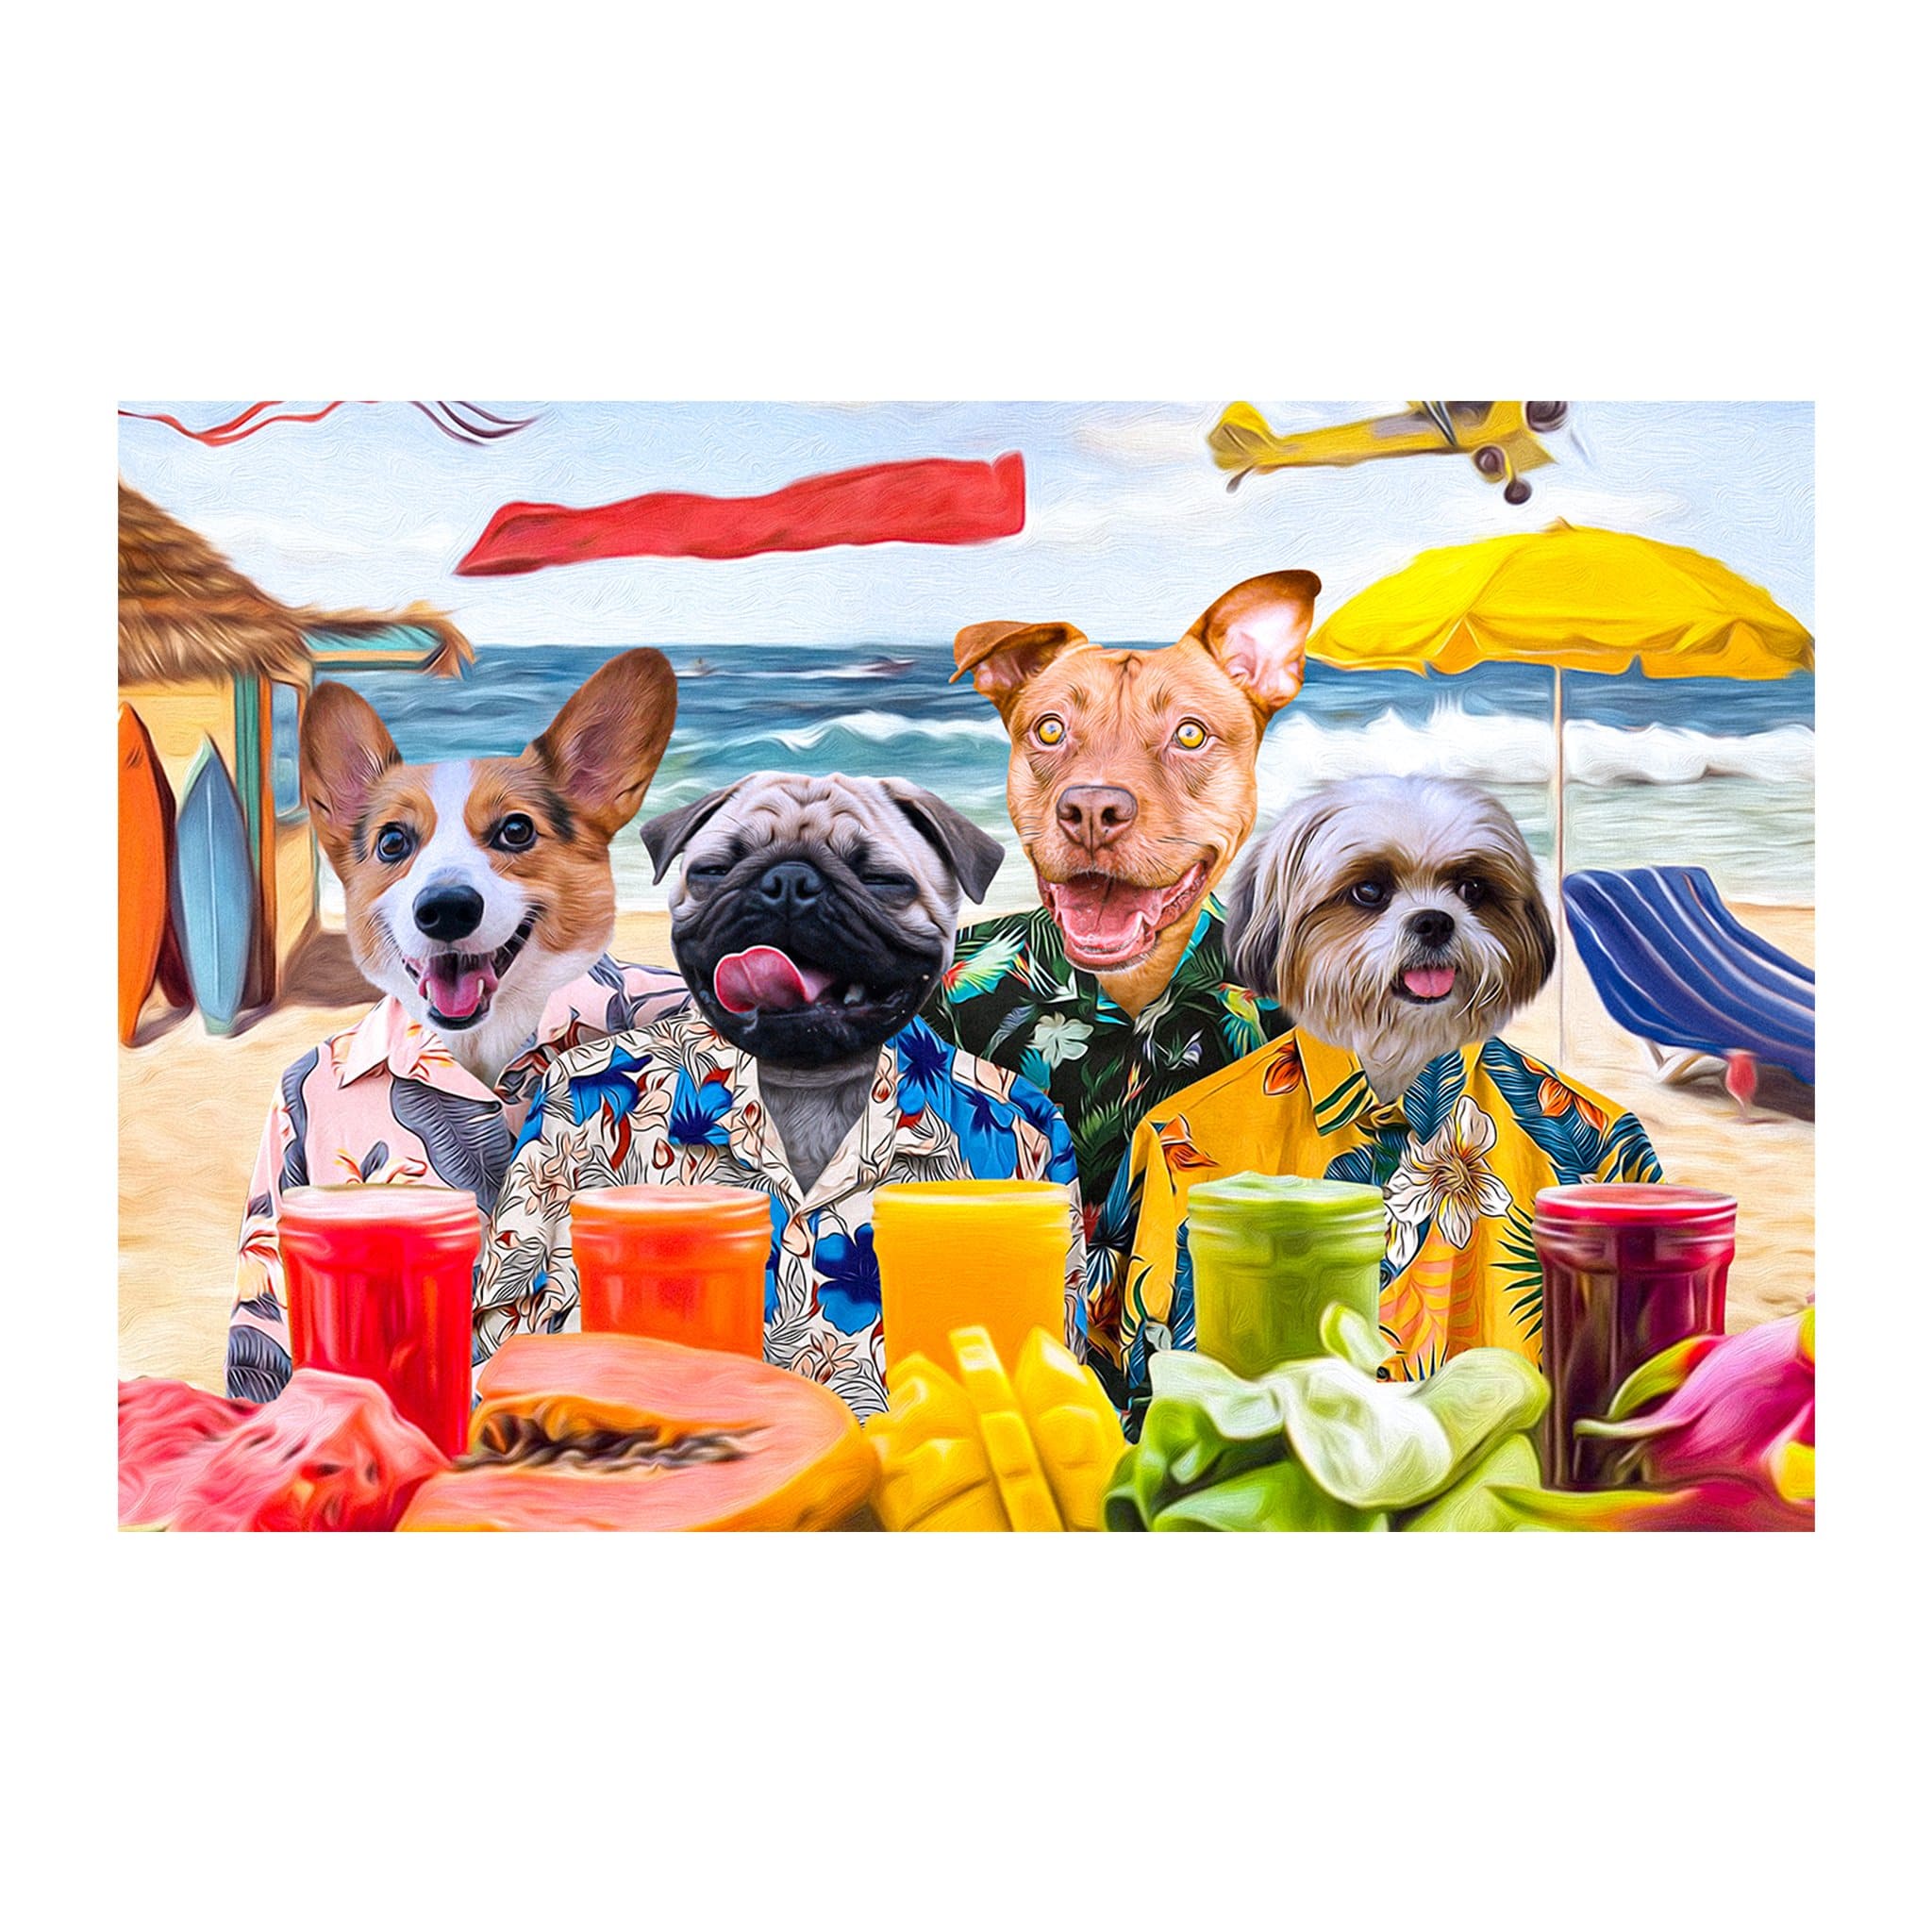 Retrato digital personalizado de 4 mascotas &#39;The Beach Dogs&#39;